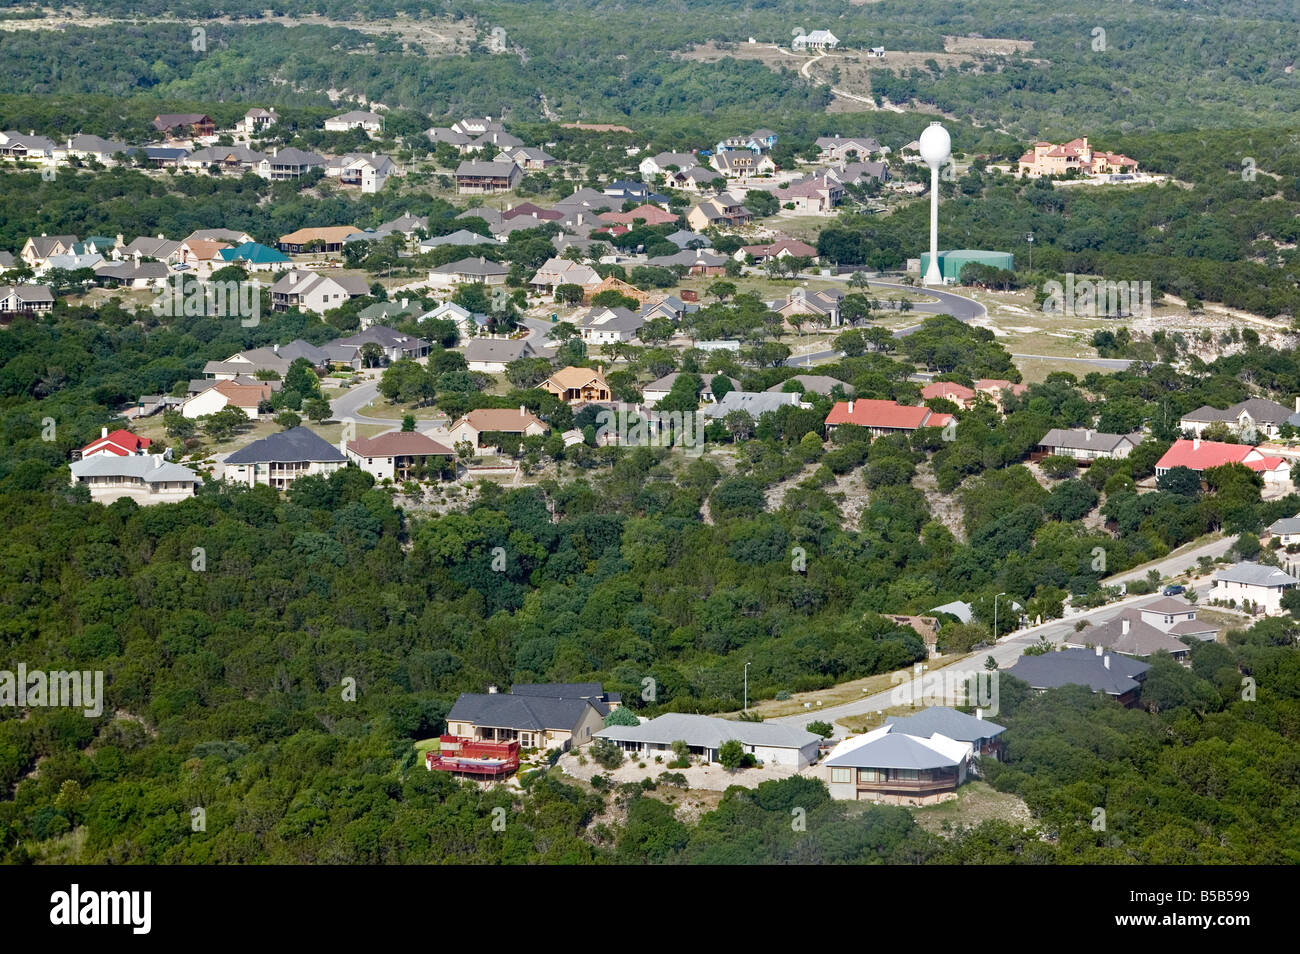 Luftbild oben Kerrville Texas Nachbarschaft Wasserturm vorbei instandgehalten Stockfoto